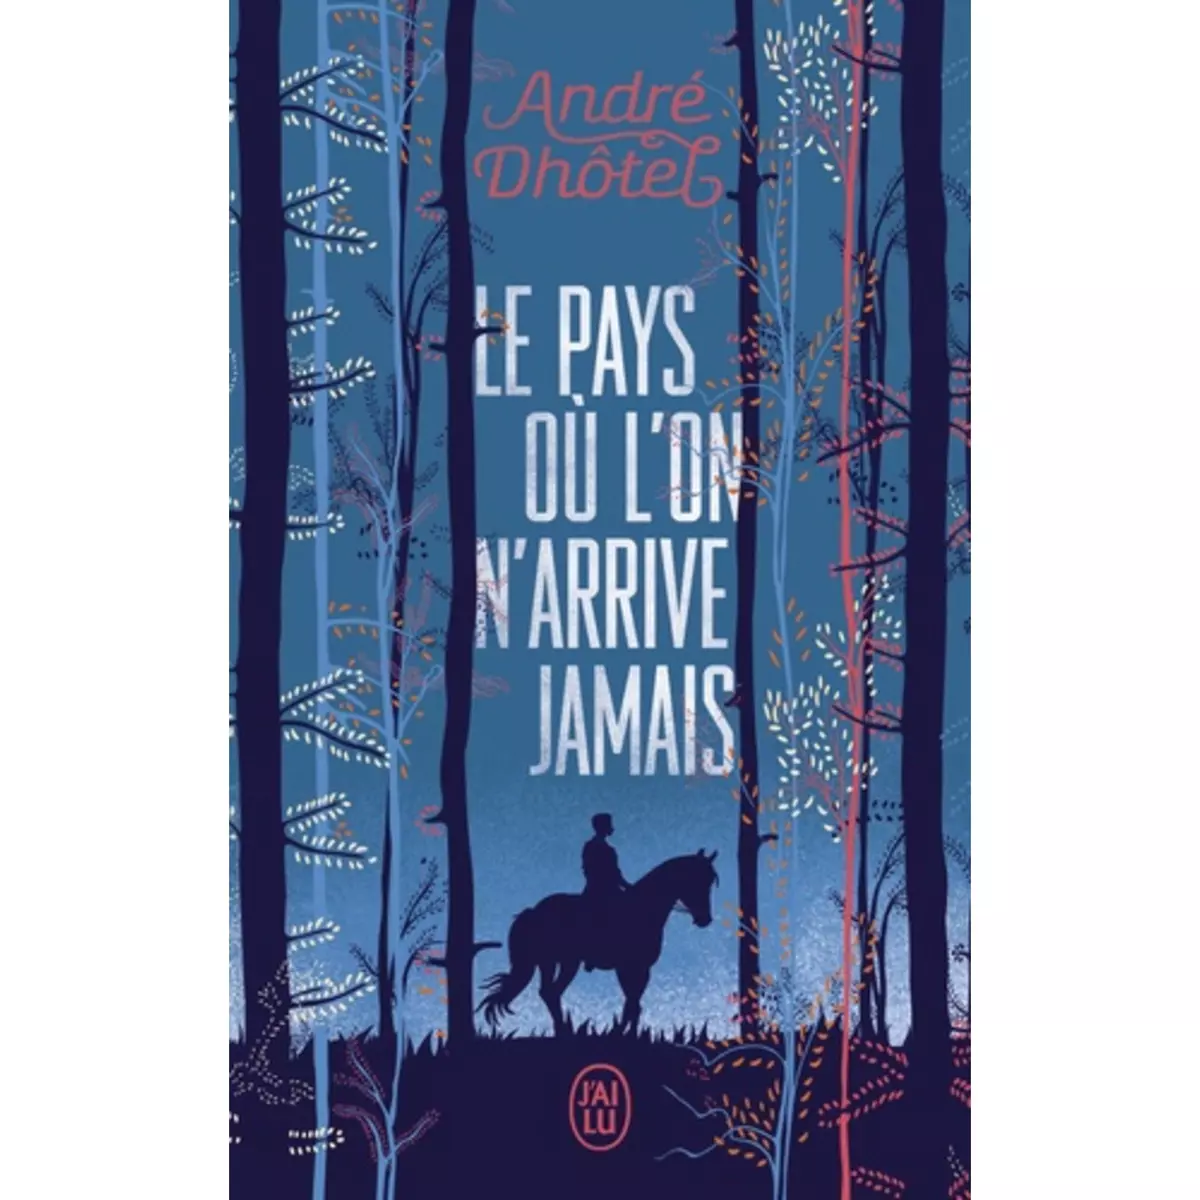  LE PAYS OU L'ON N'ARRIVE JAMAIS, André Dhôtel